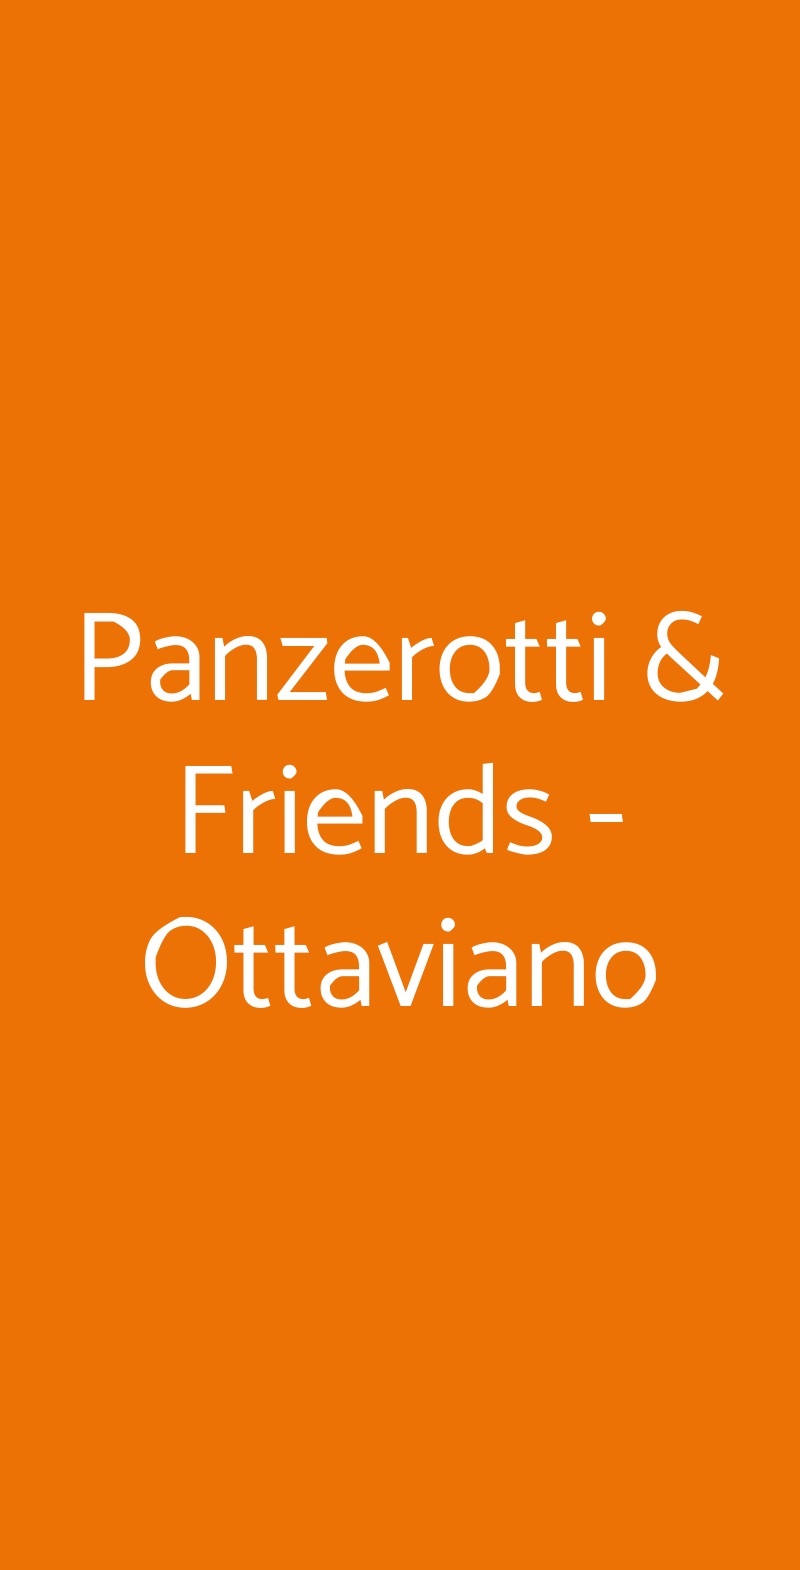 Panzerotti & Friends - Ottaviano Roma menù 1 pagina